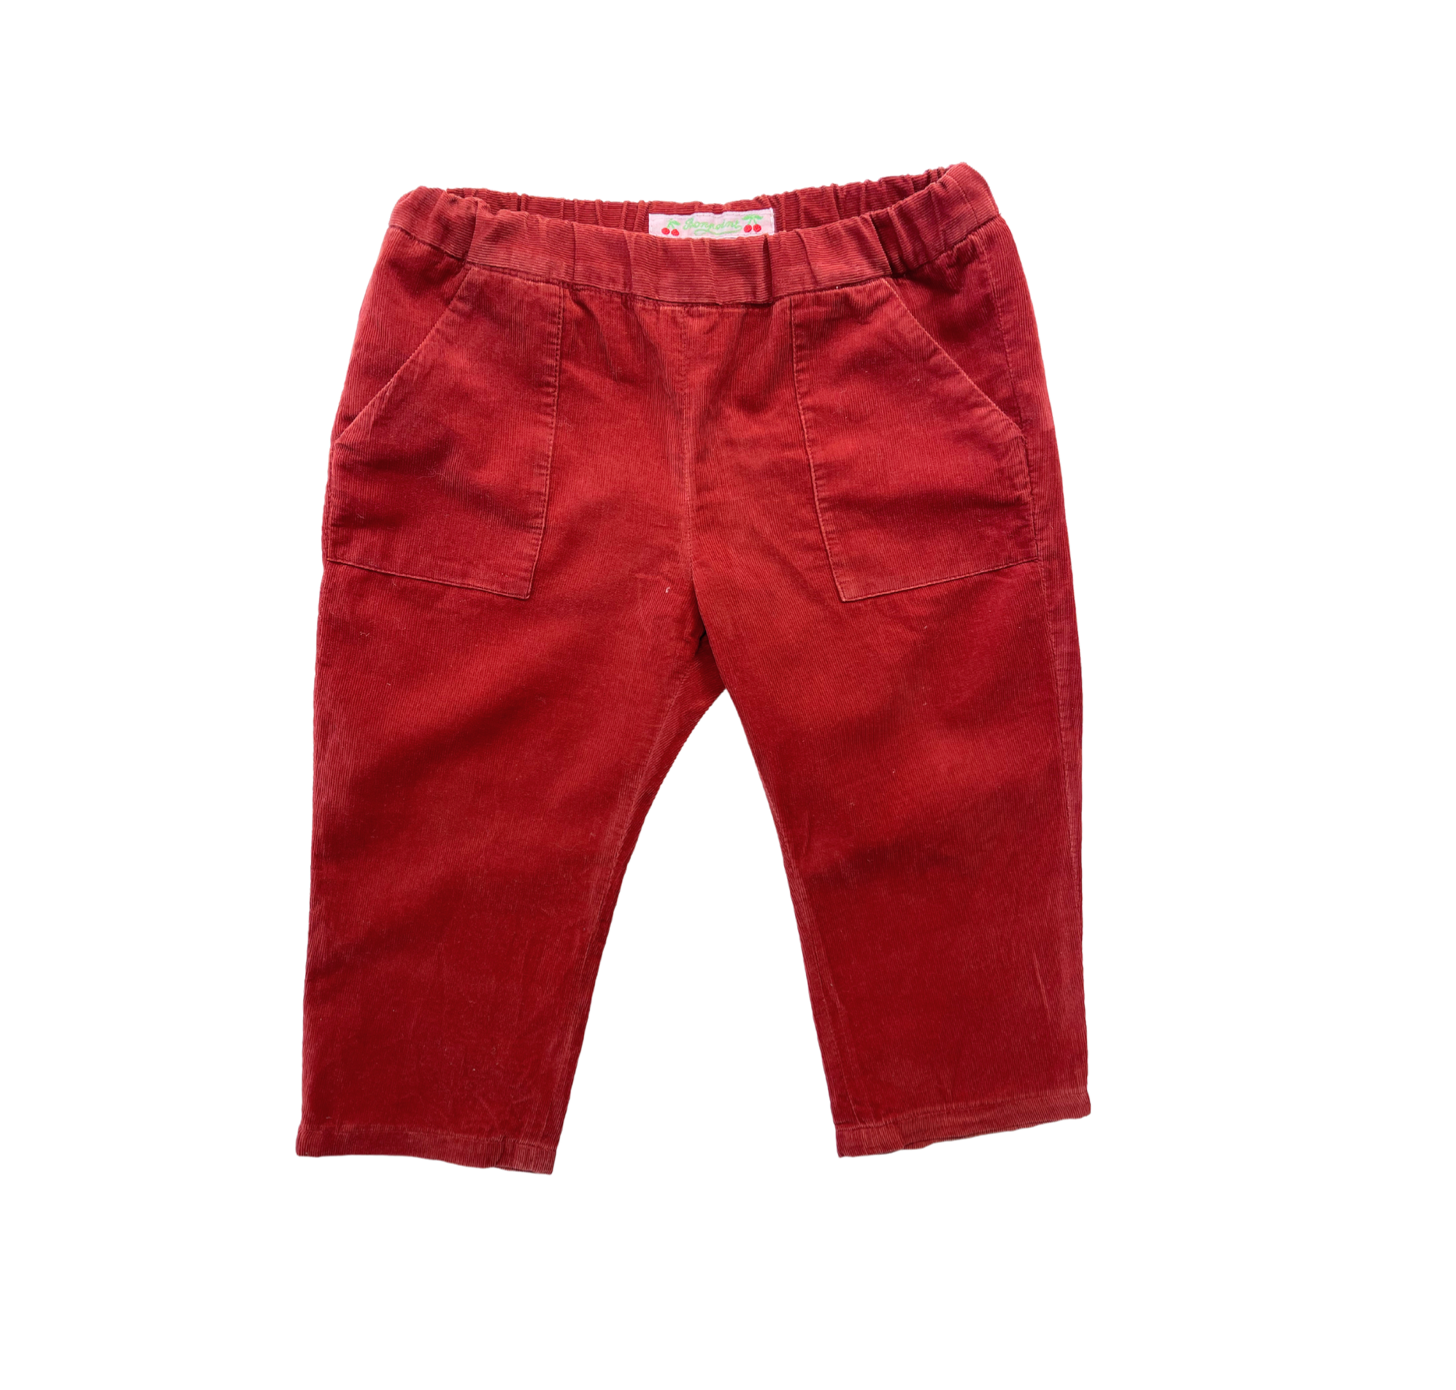 BONPOINT - Pantalon en velours rouille - 2 ans